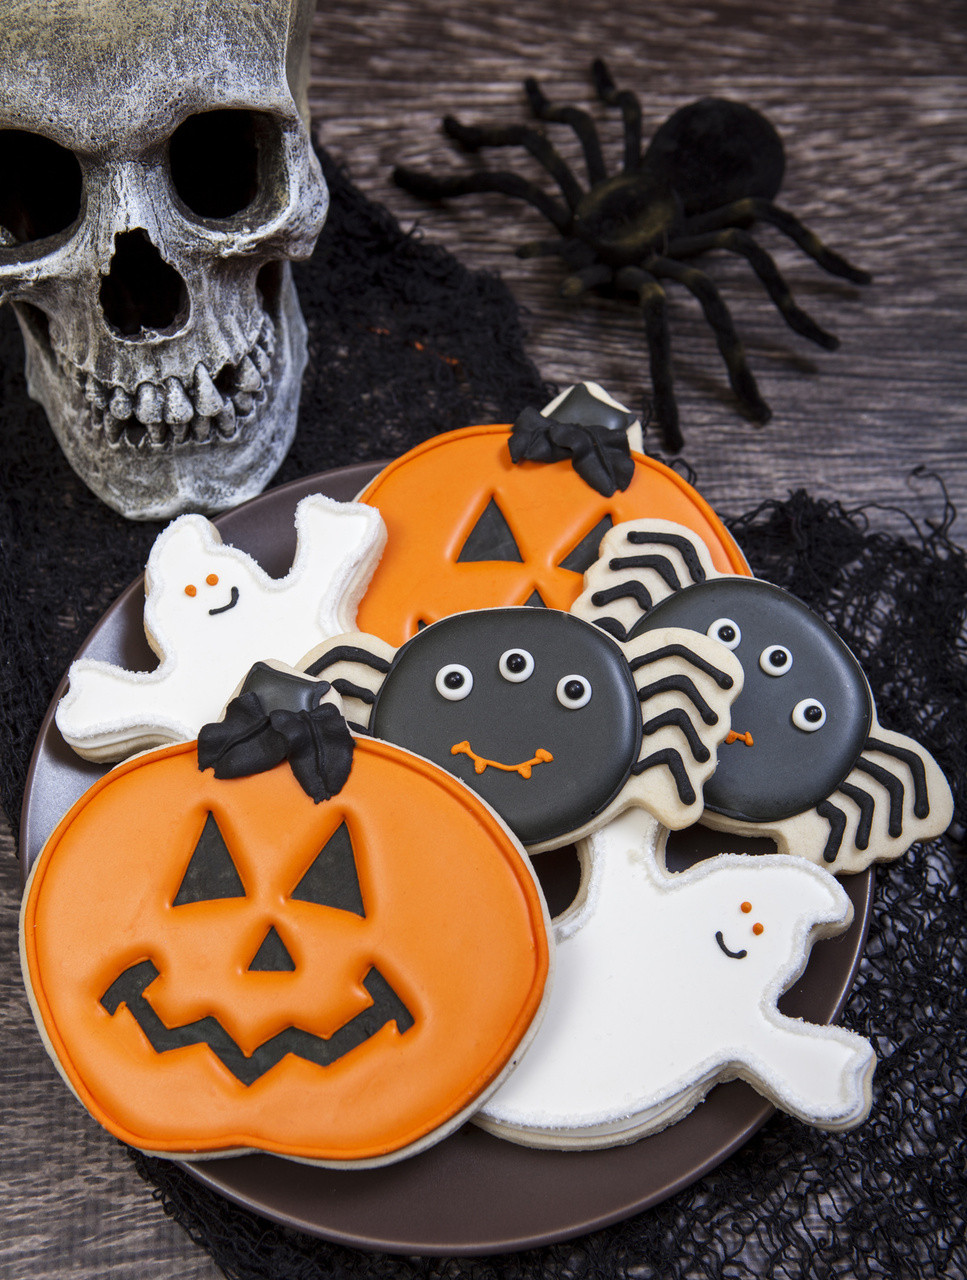 Halloween Cookies Ideas
 Spooky Cookie Halloween Cookie Decorations